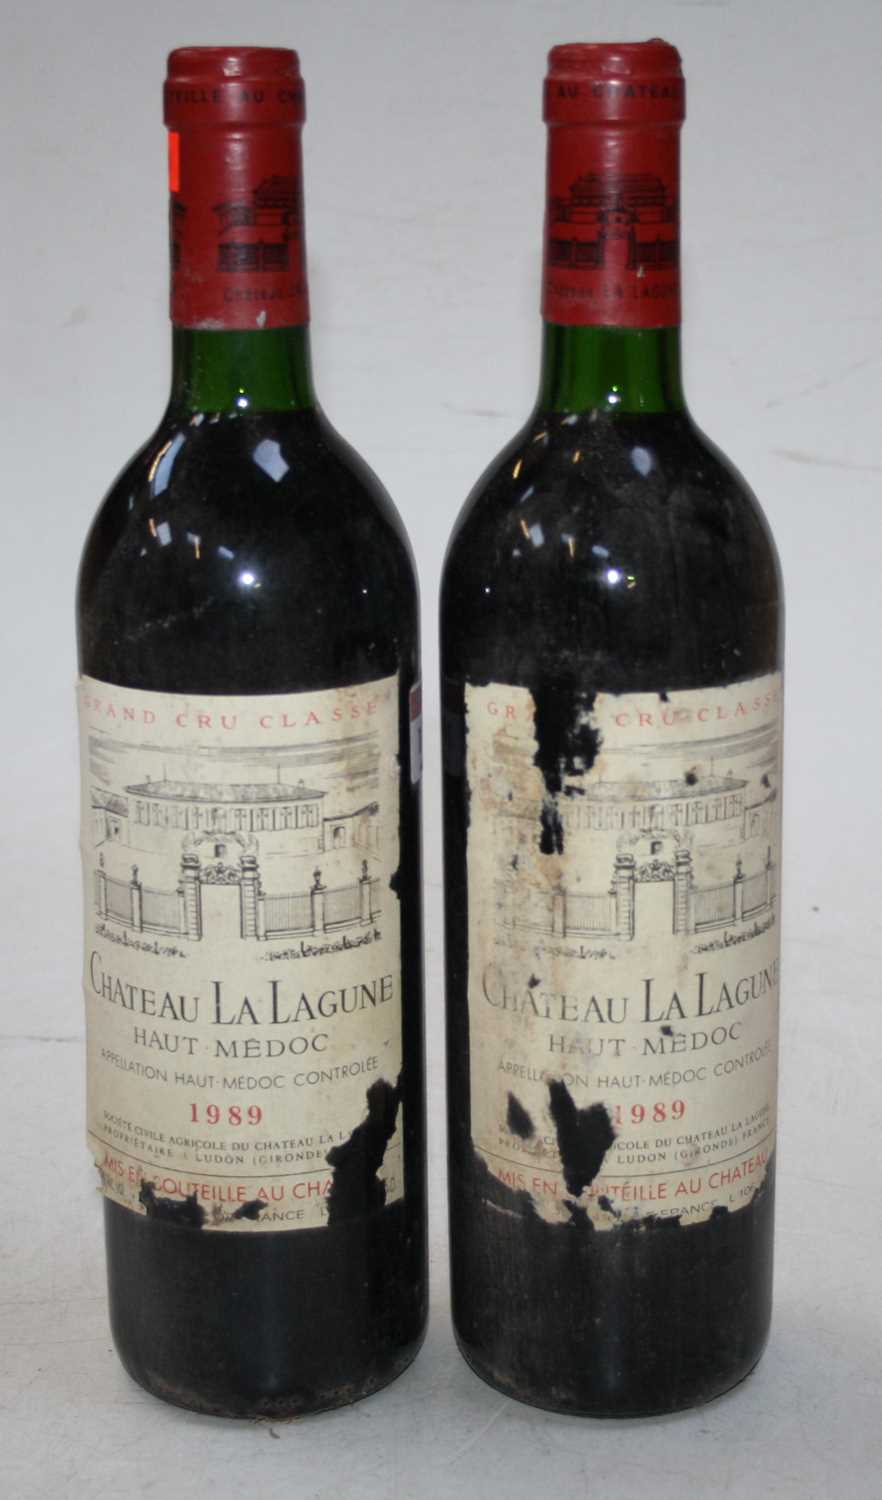 Château La Lagune, 1989, Haut Medoc, 2 bottles